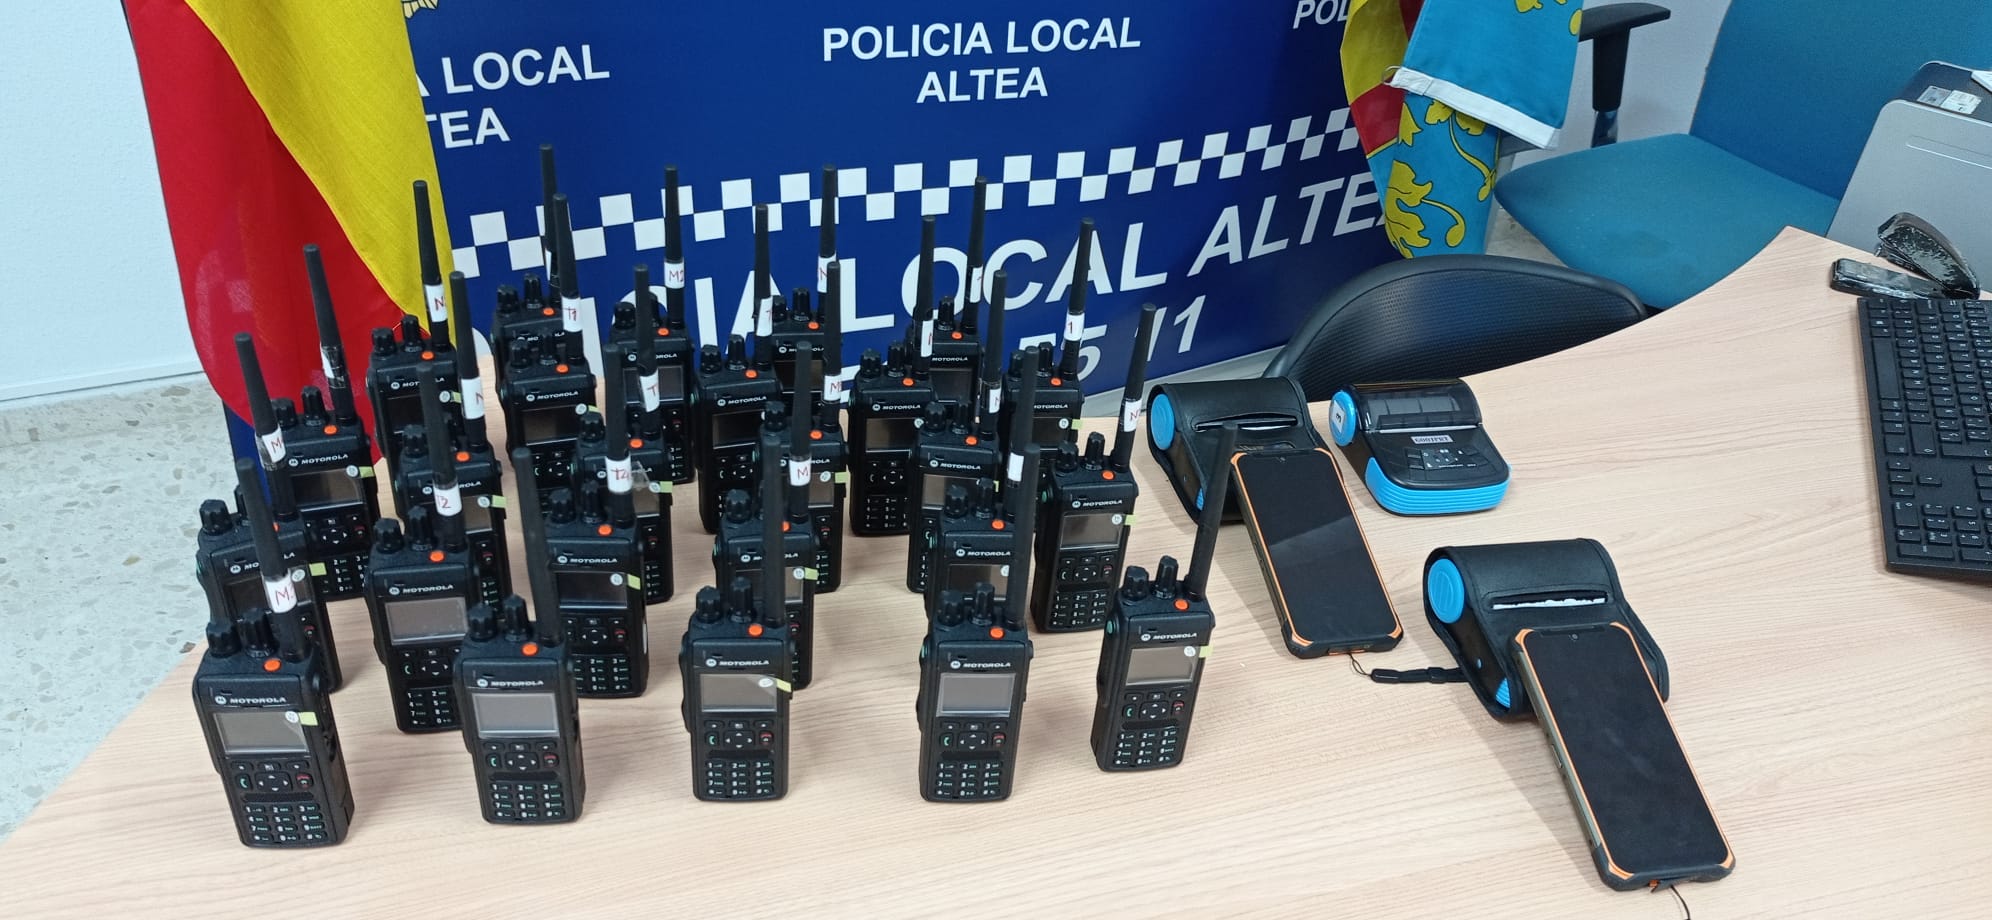 La Regidoria de Seguretat inverteix 30.000 euros en millora de material tecnològic per a la Policia Local